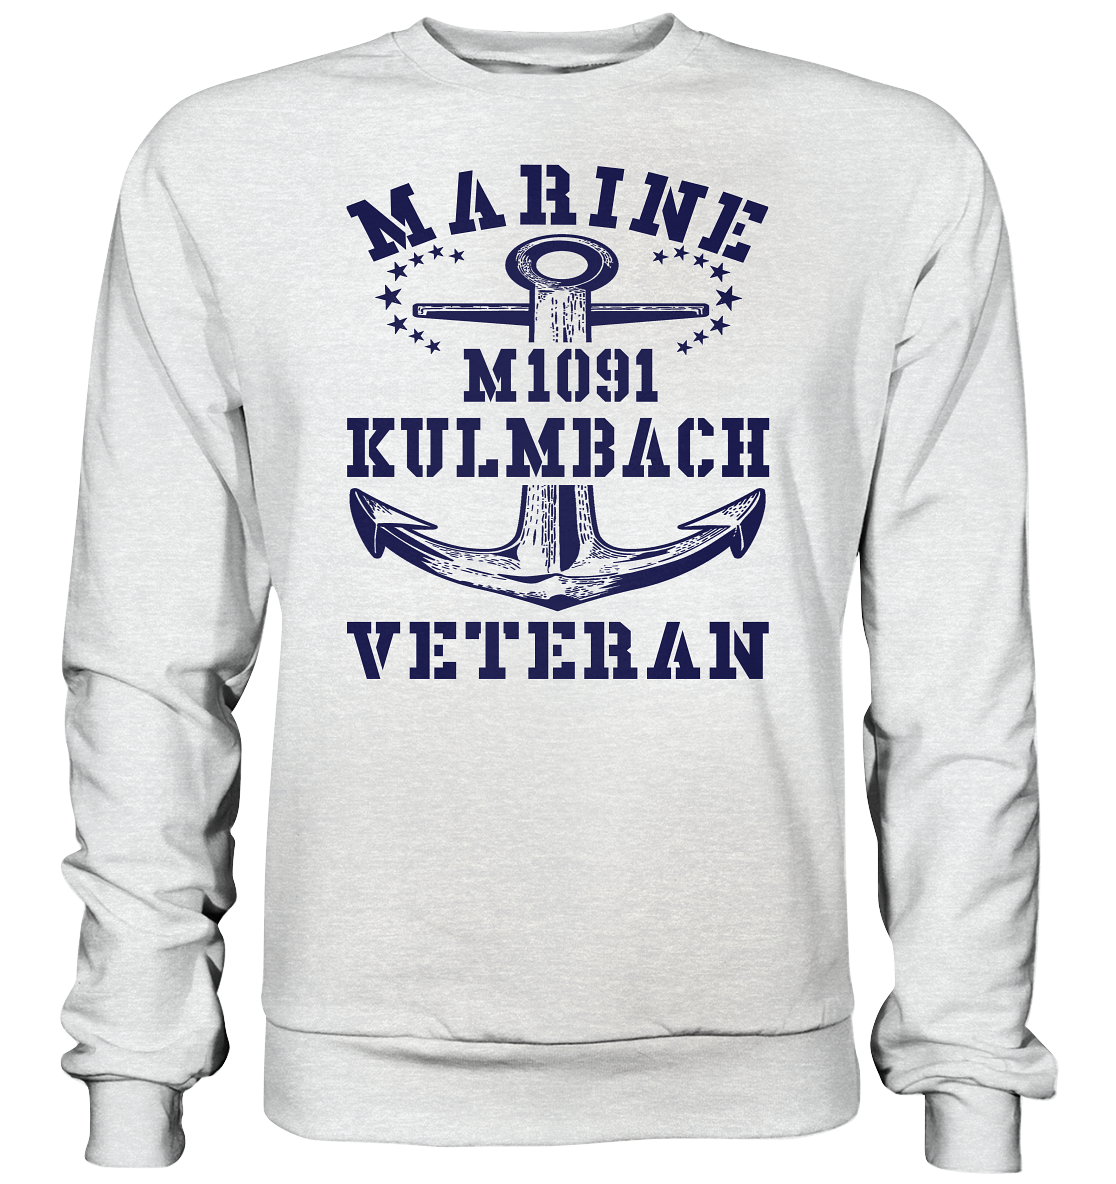 M1091 KULMBACH Marine Veteran - Premium Sweatshirt